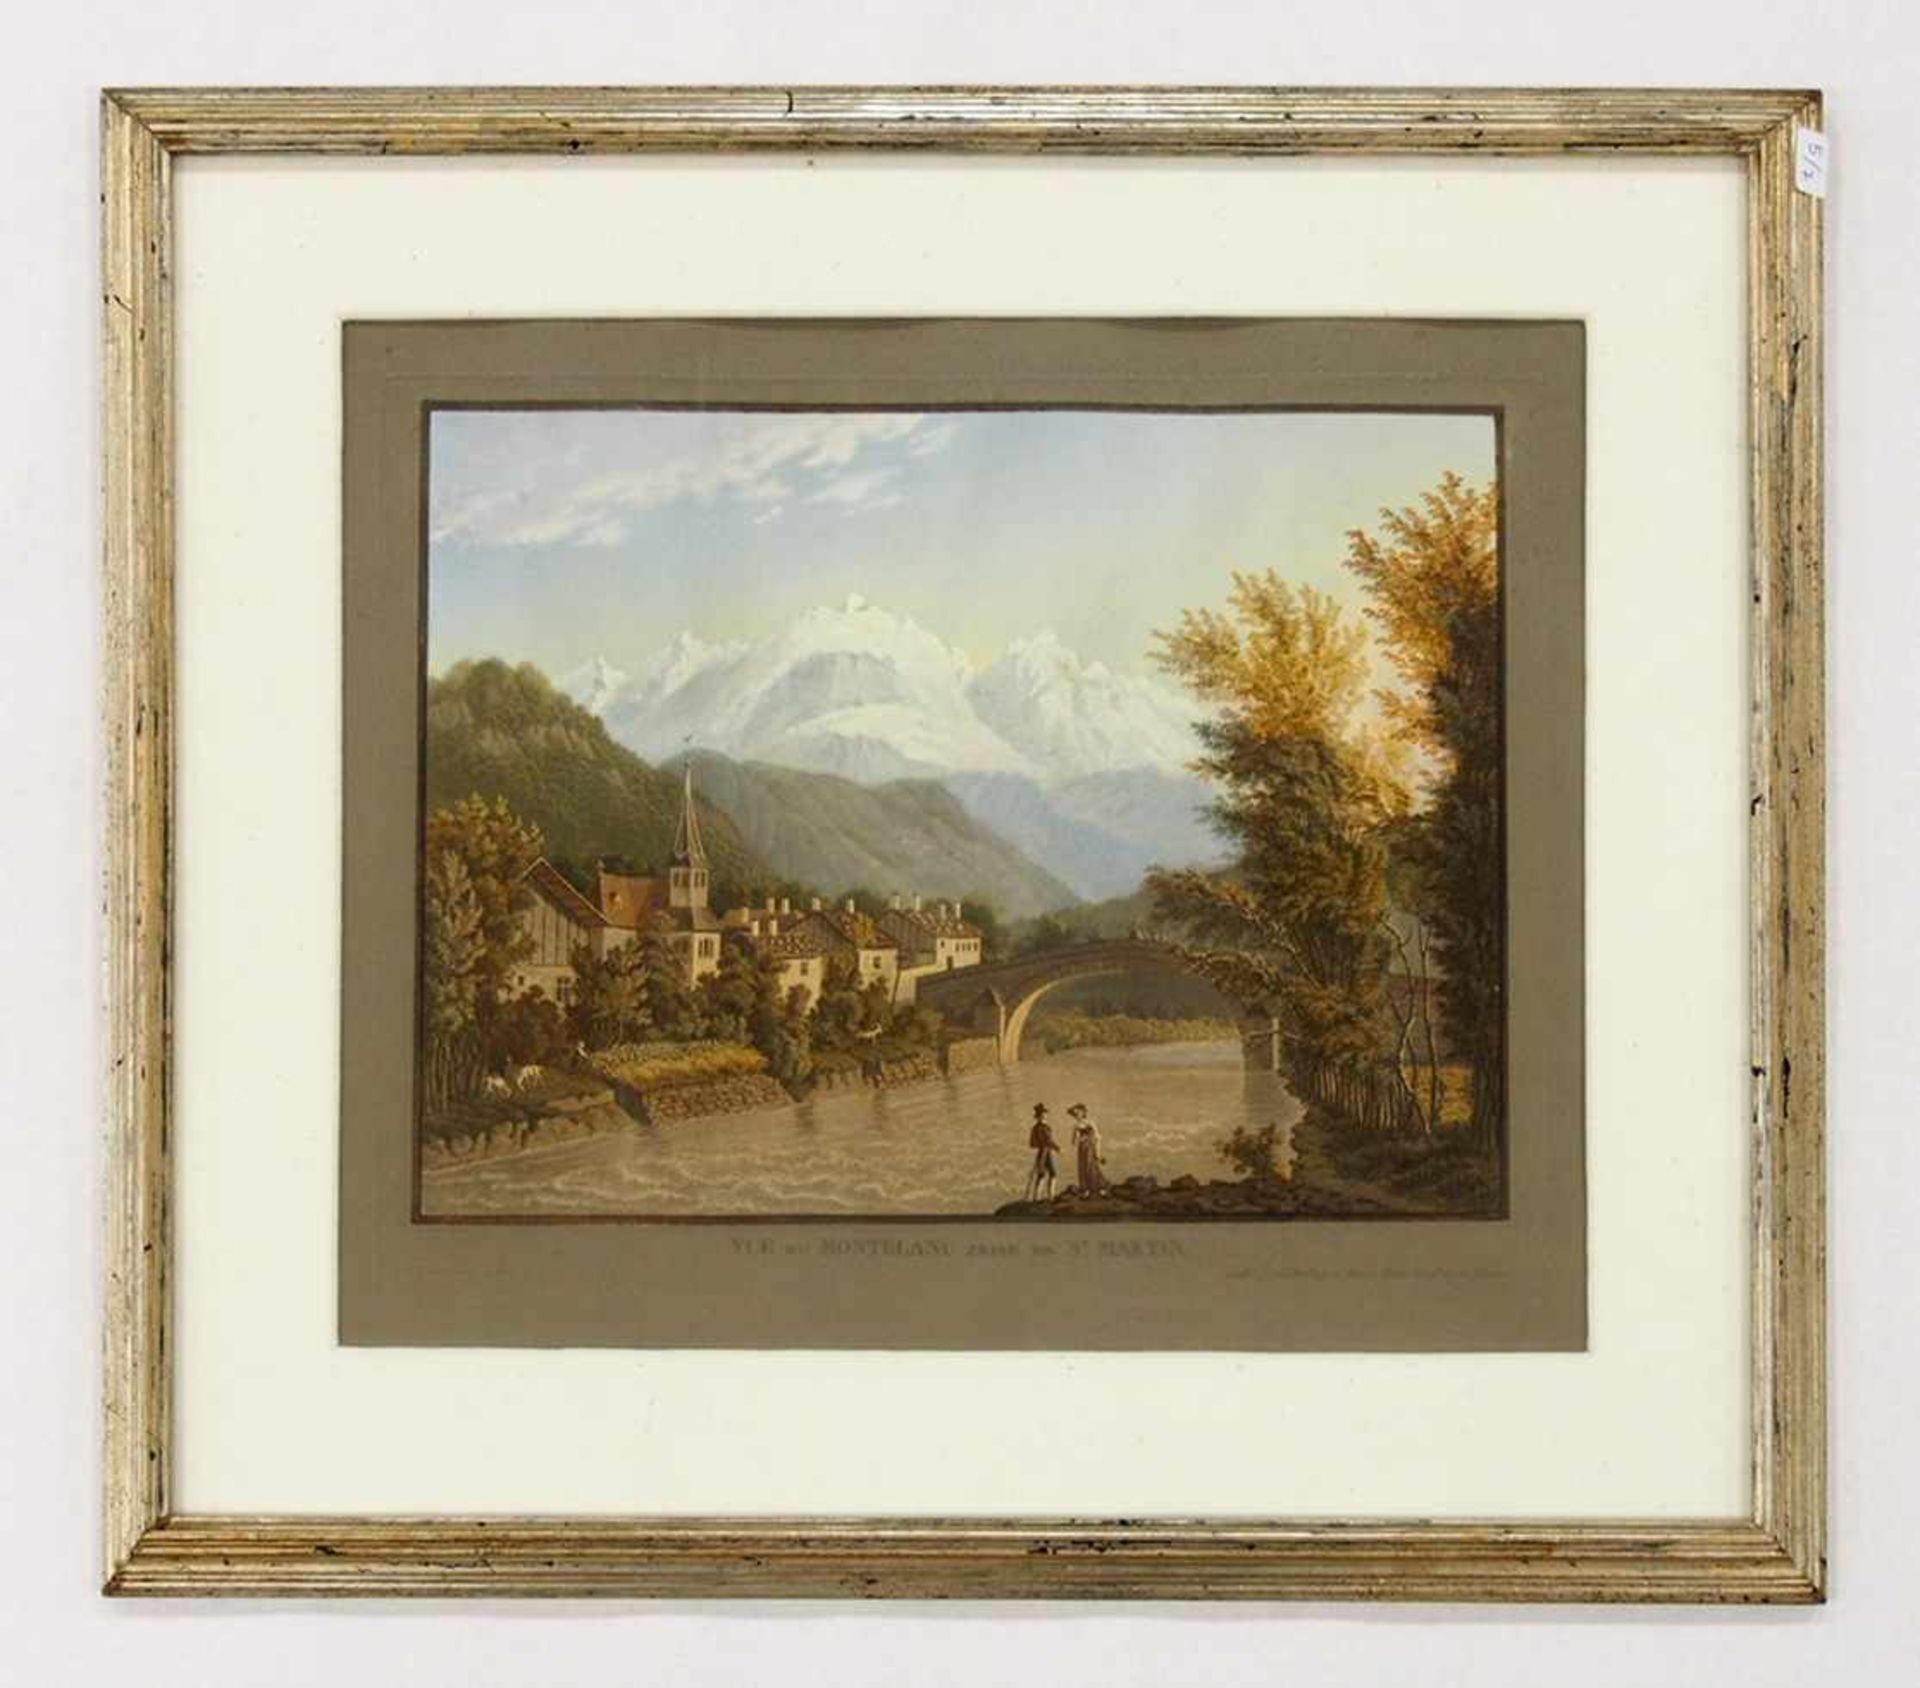 Vue du Montblanc prise de St. MartinAquatinta, handgouachiert von J.P. Lory, Bern, um 1824, 29 x - Bild 2 aus 2